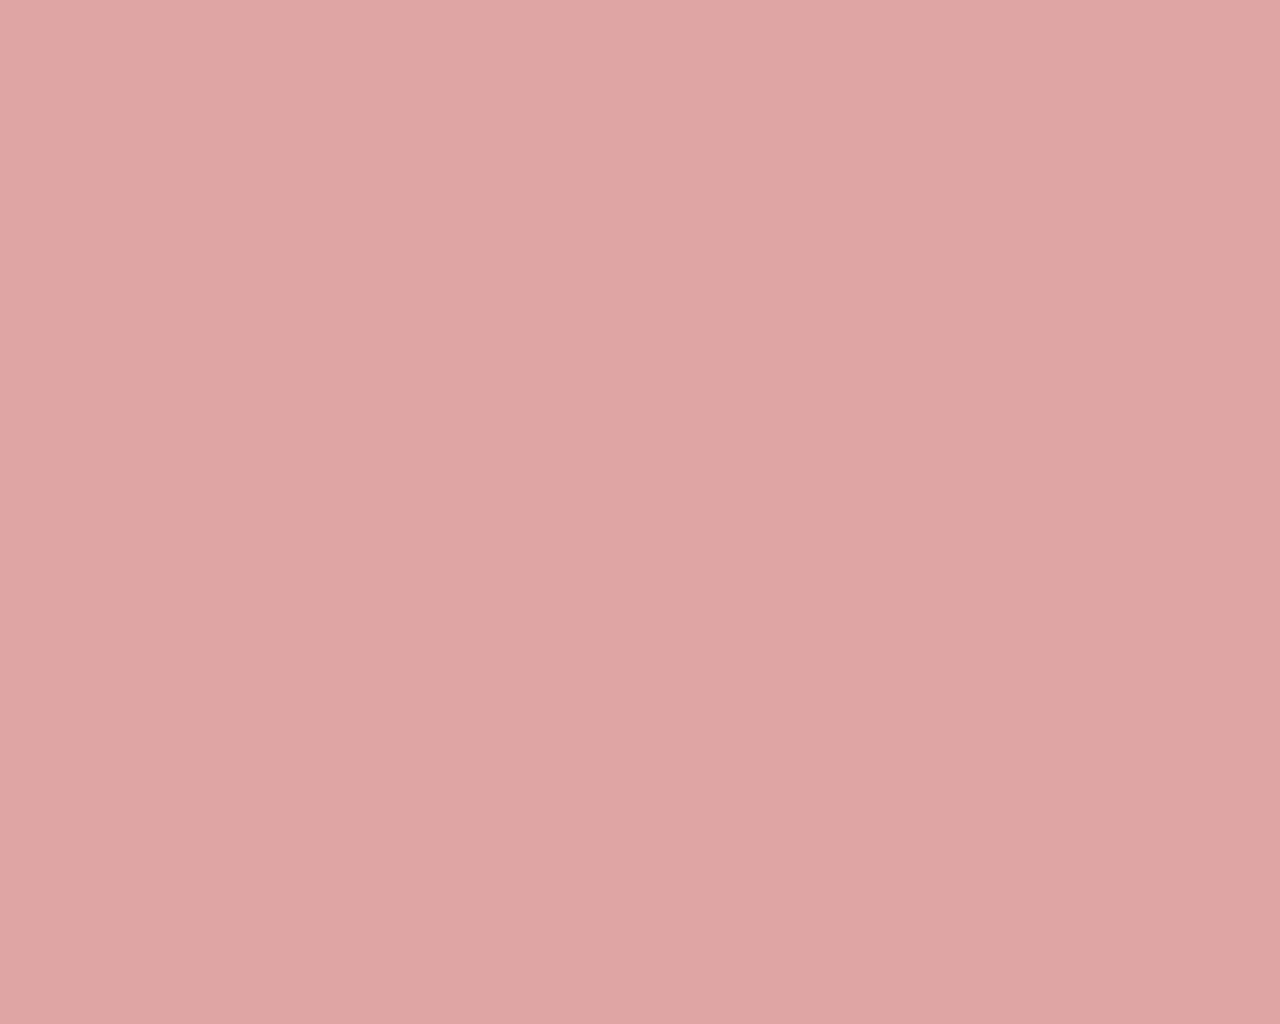 Plain Pastel Background - KibrisPDR